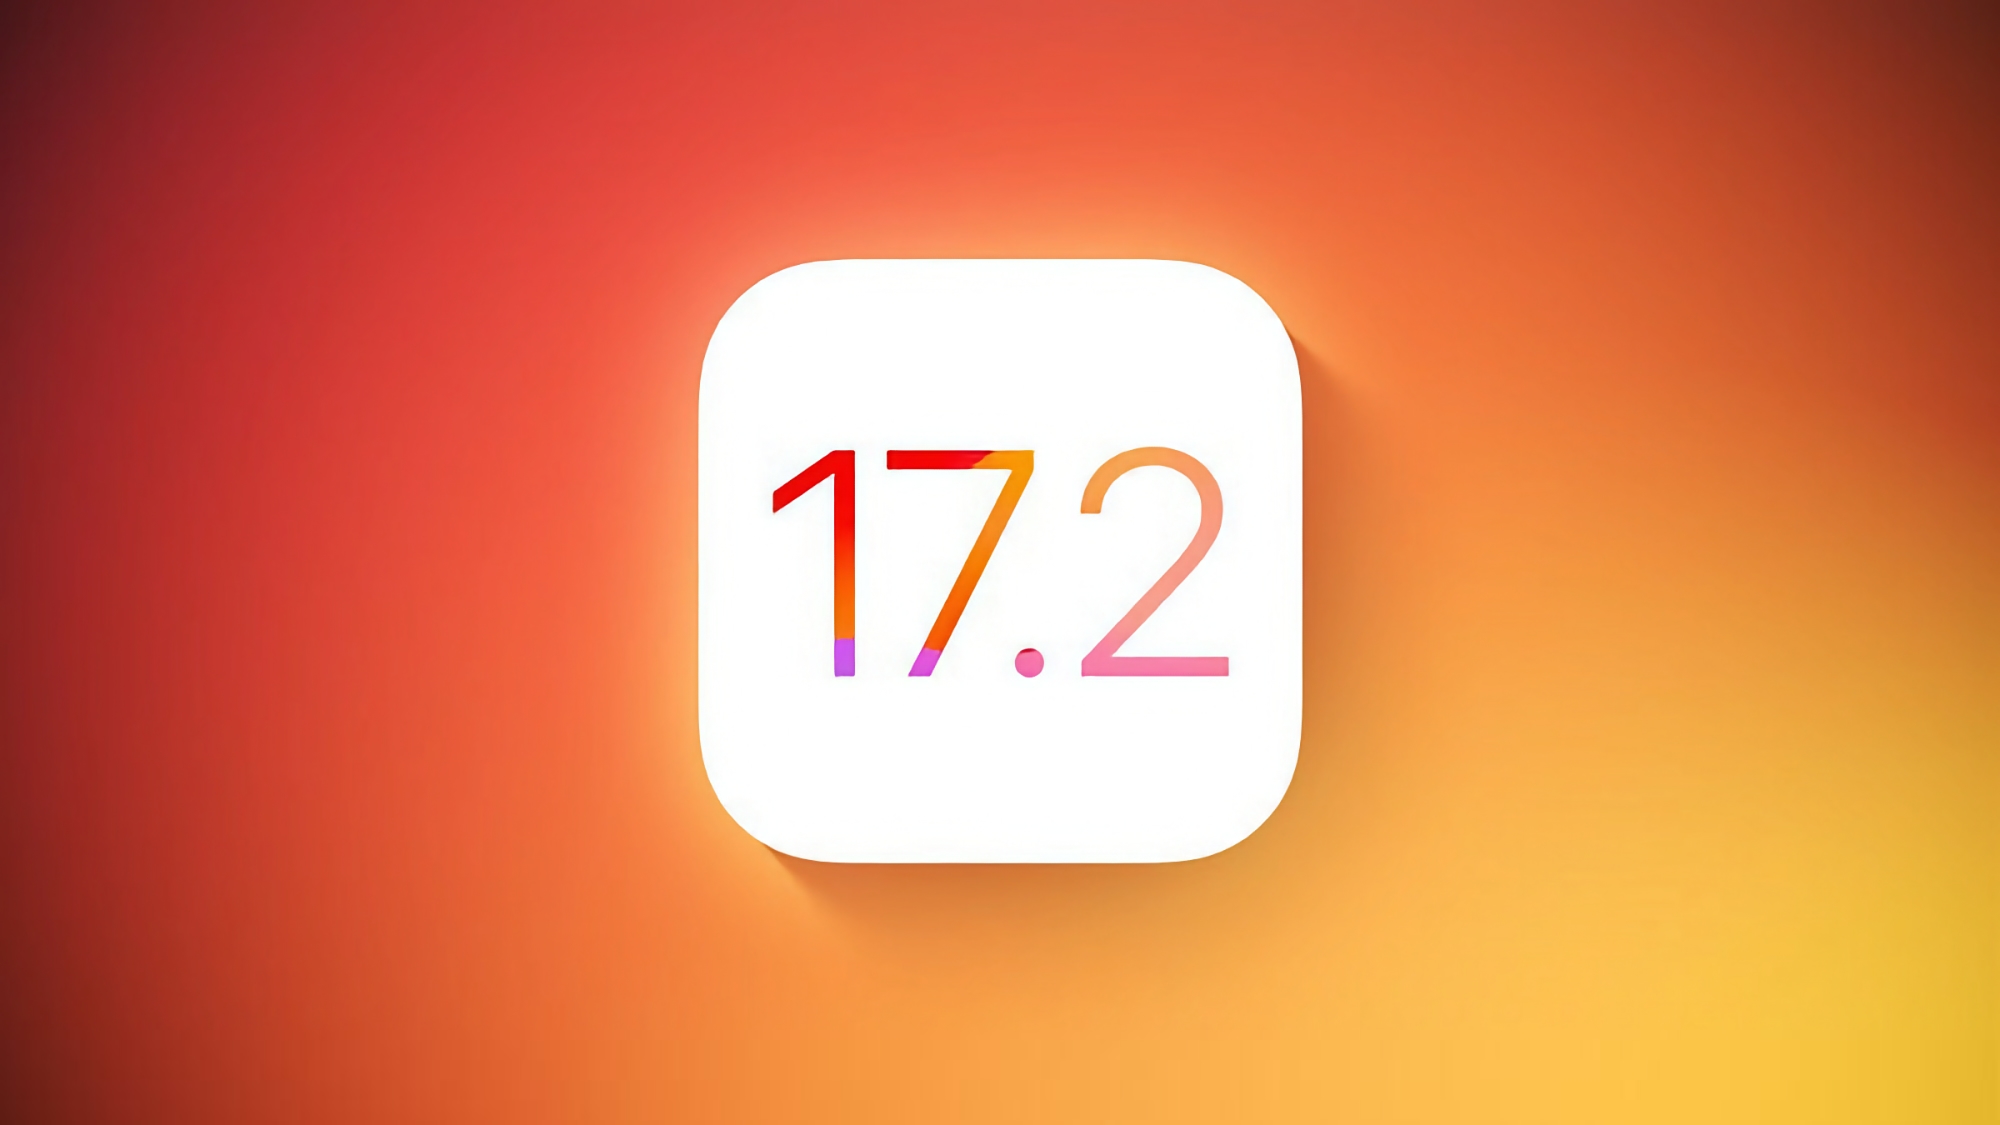 Apple veröffentlicht iOS 17.2 Beta 1 mit der Journal-App und neuen Funktionen